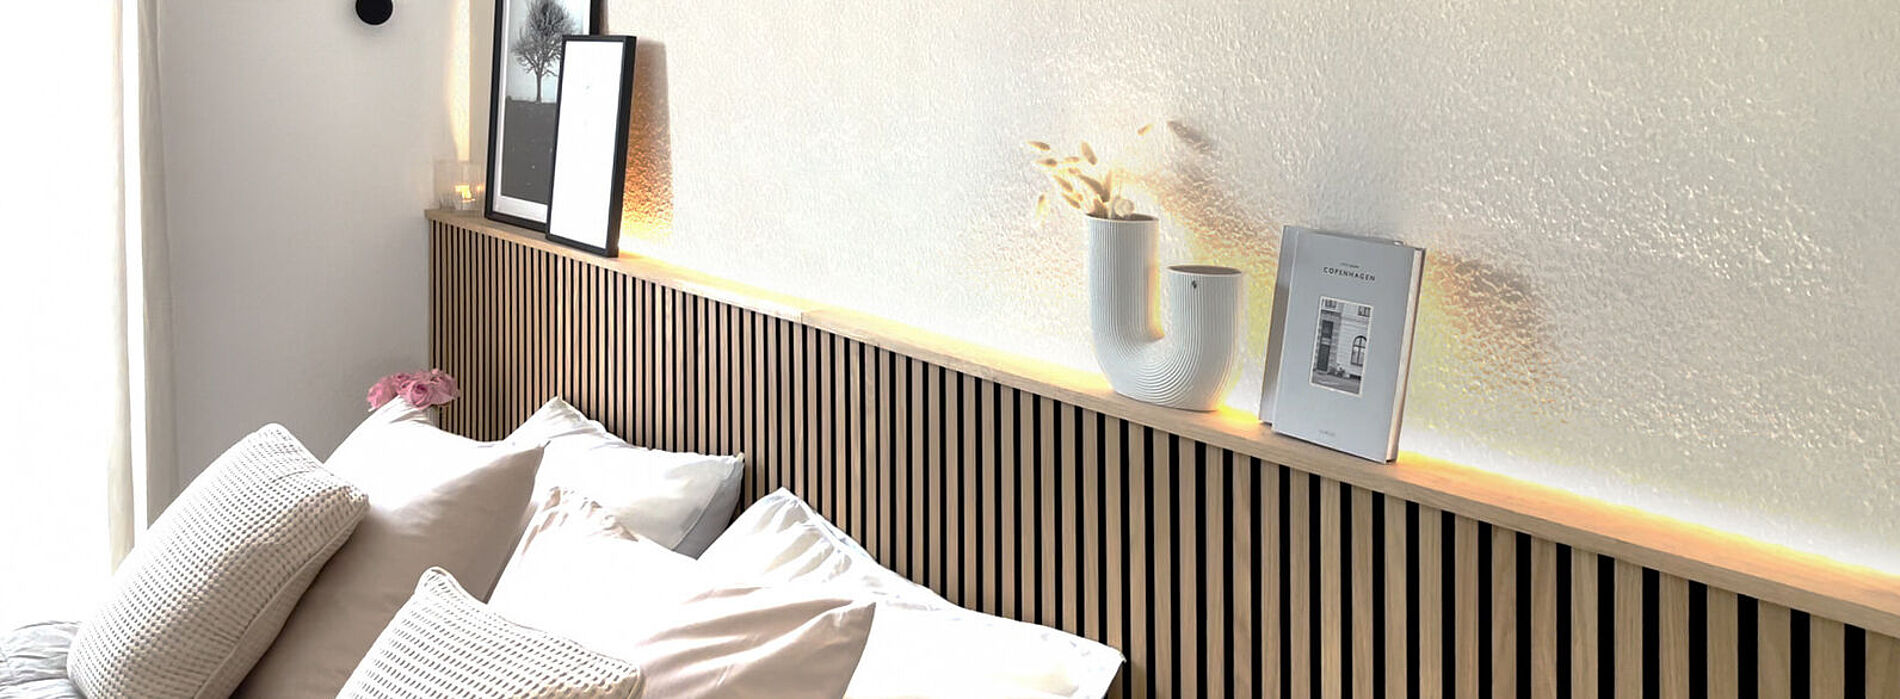 WAGNER Schlafzimmer-Wandgestaltung mit Paneelen & Farbe Ergebnis